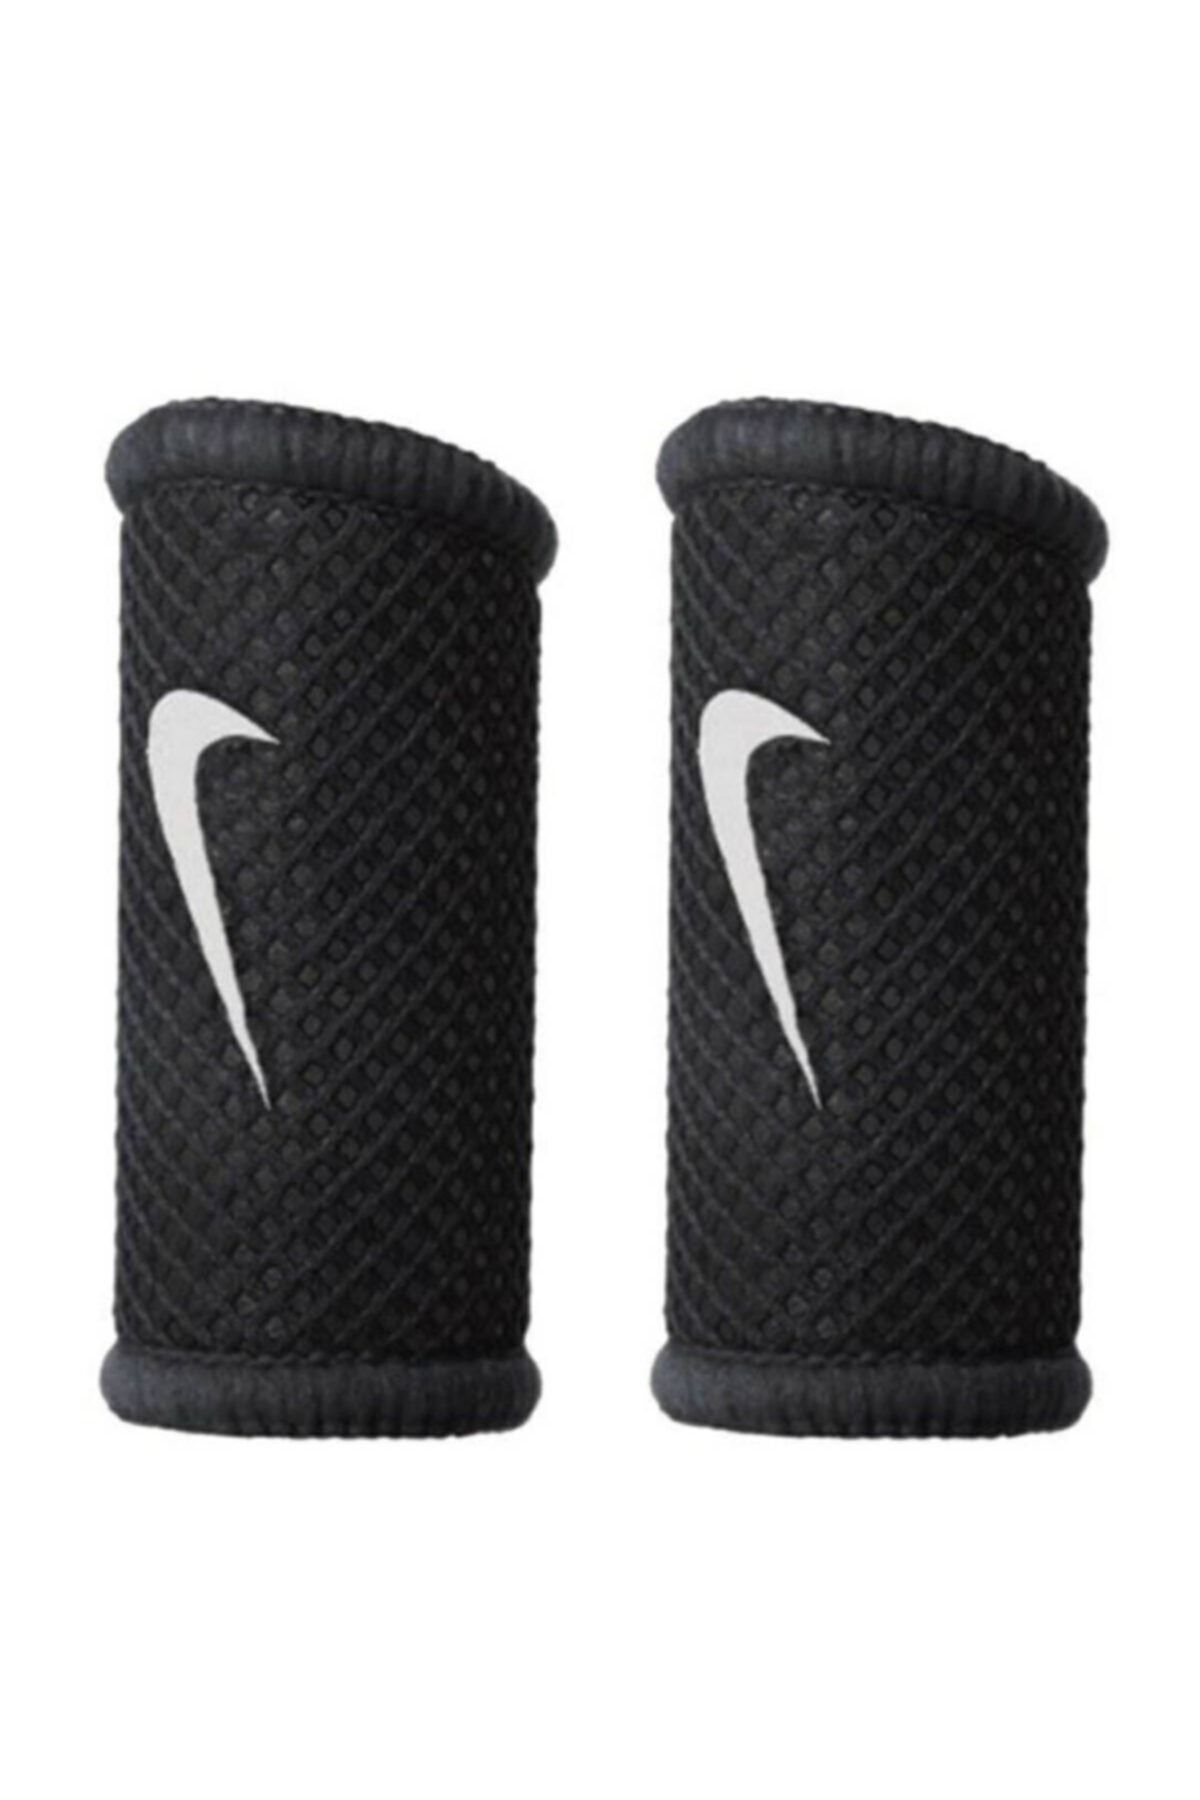 Nike Finger Sleeves Unisex Siyah Basketbol Parmaklık N.ks.05.010.md